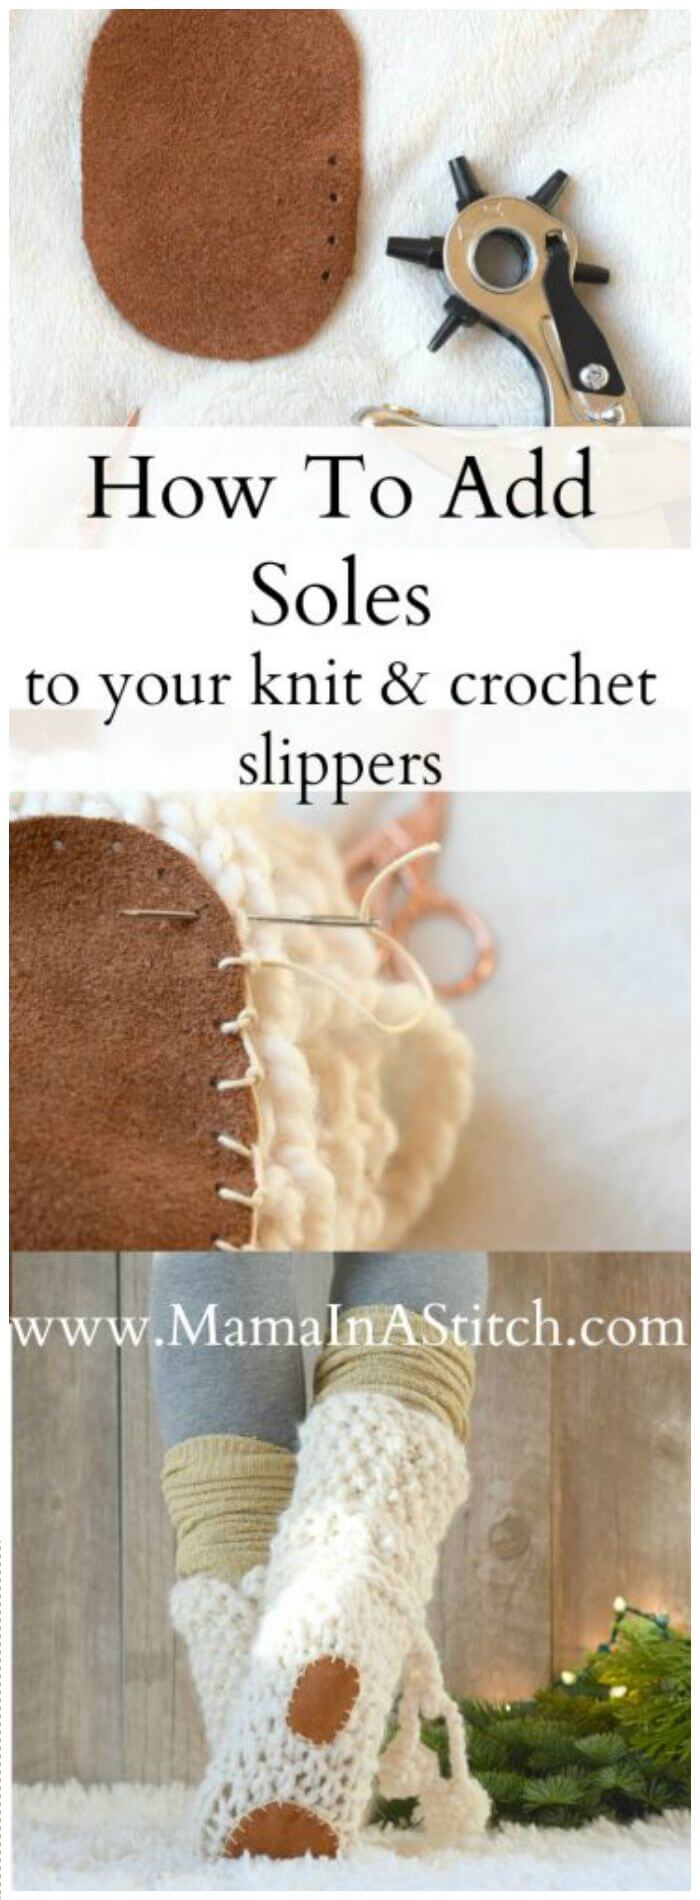 Hacer bricolaje para agregar suelas a las pantuflas de crochet o tejer, pantuflas de crochet usando un patrón de suela de chanclas